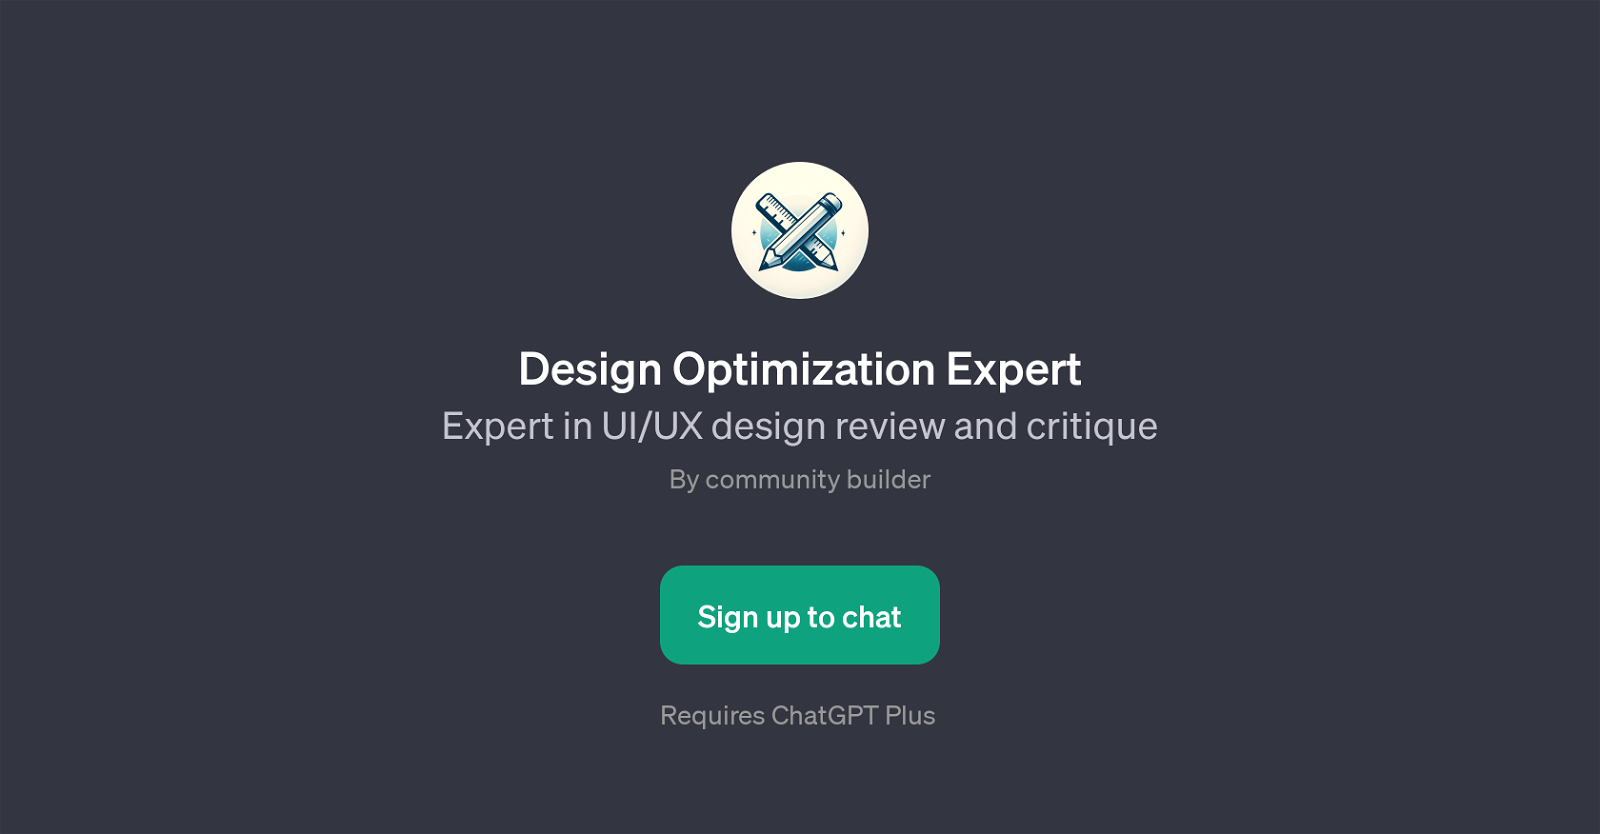 Design Optimization Expert website